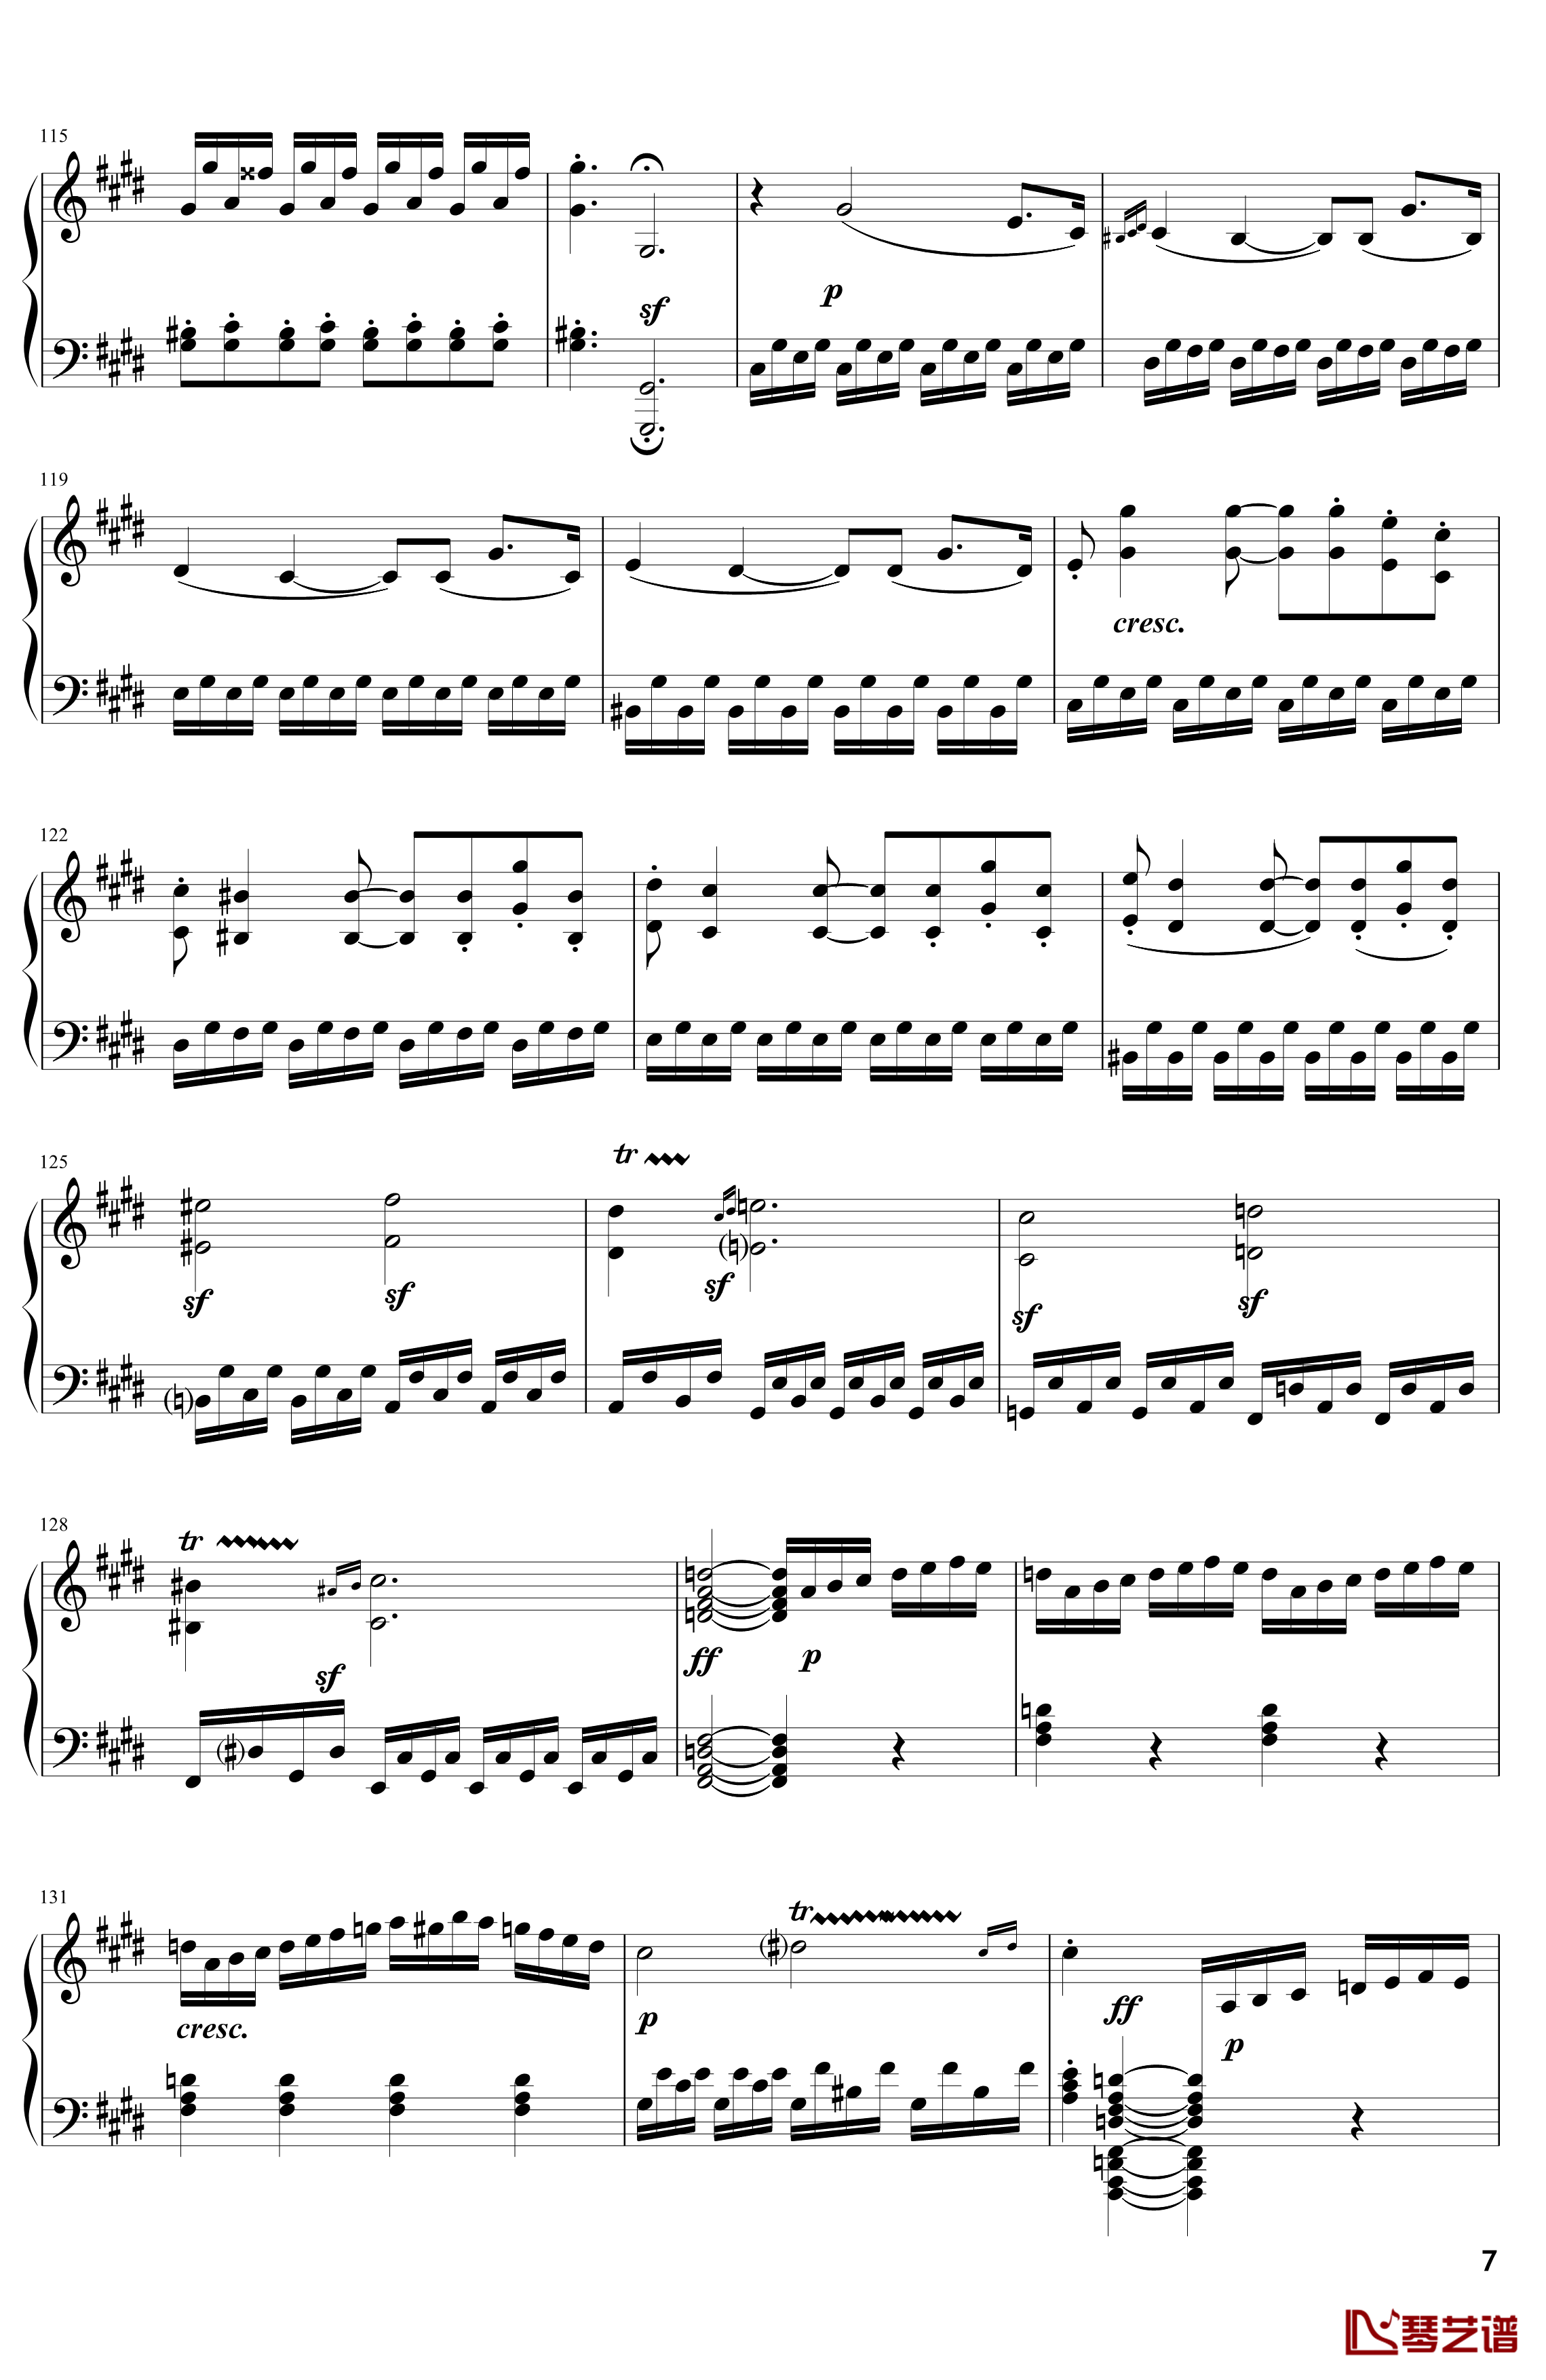 月光钢琴谱-奏鸣曲-贝多芬-beethoven7